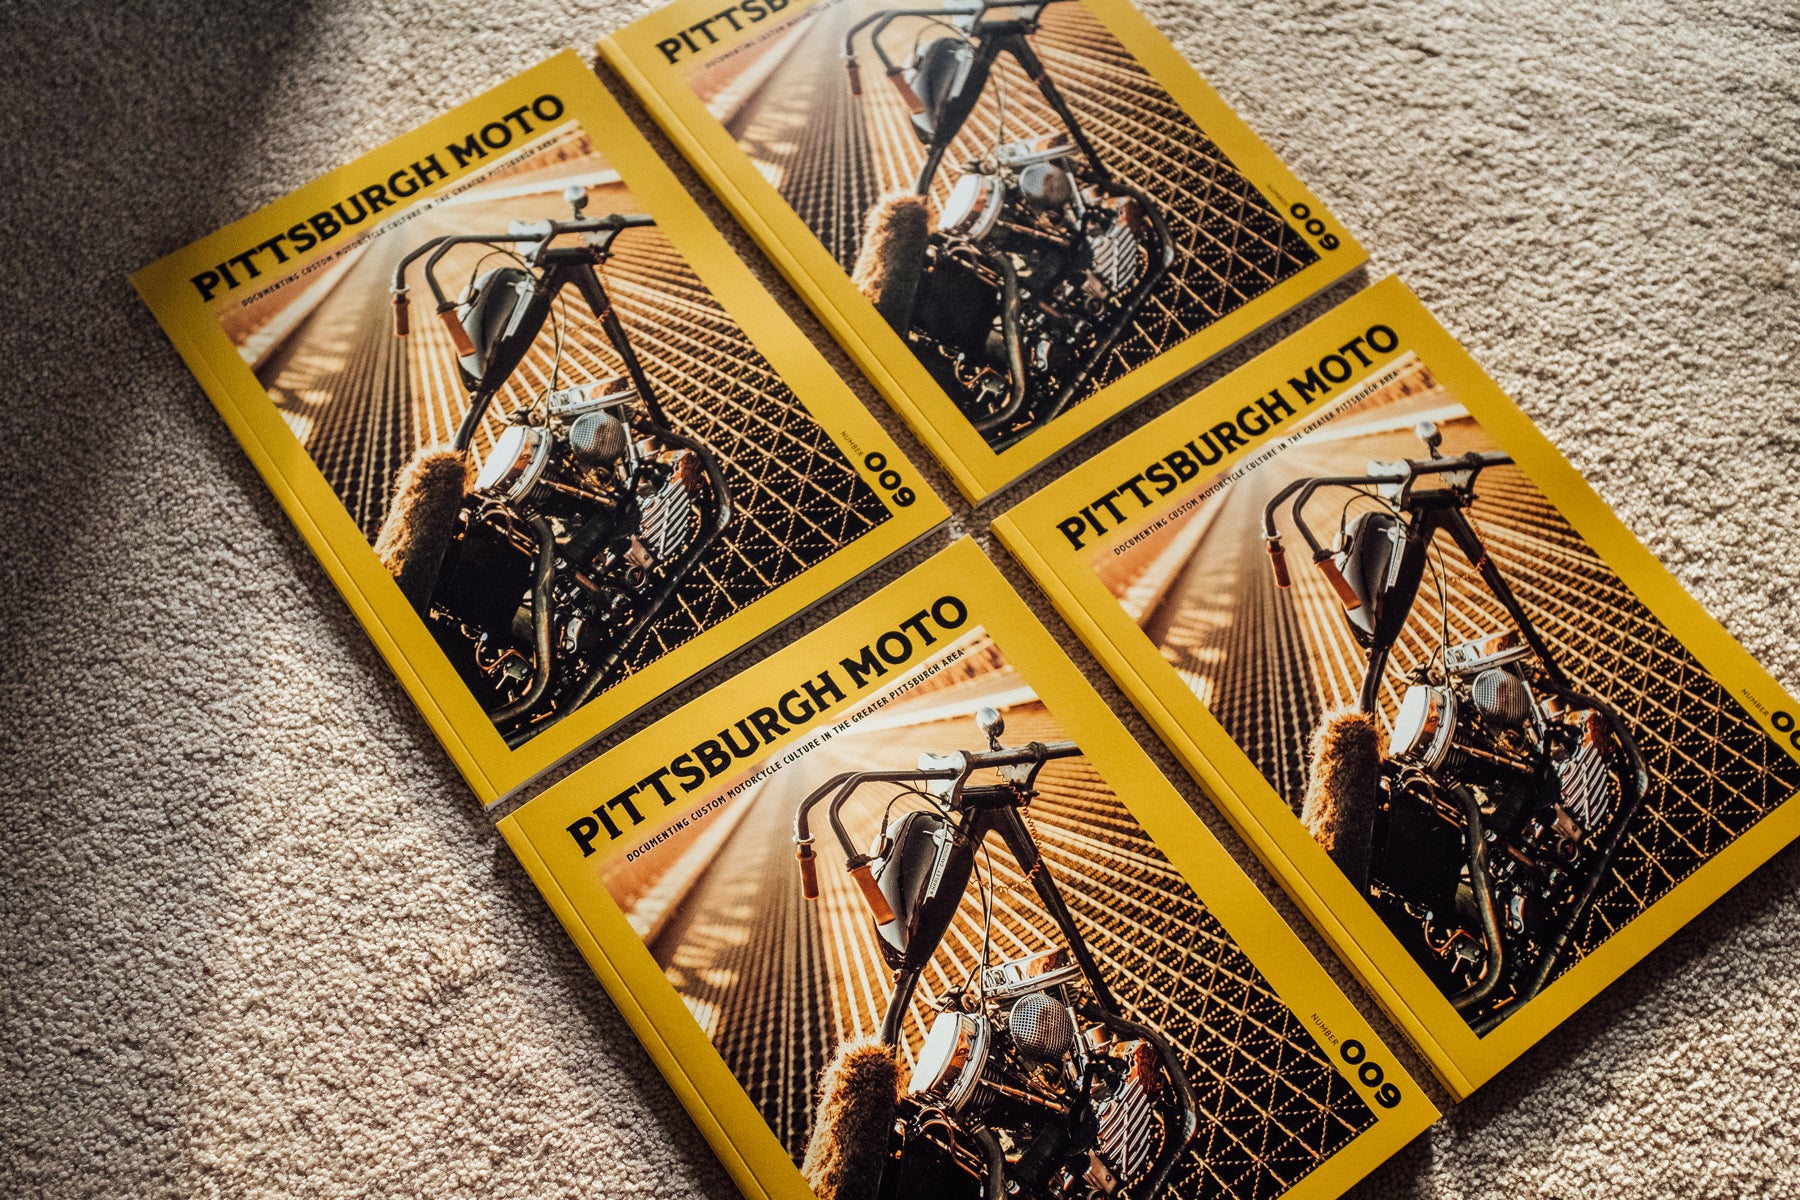 Pittsburgh Moto magazine issue 9 Kurt Diserio editor designer